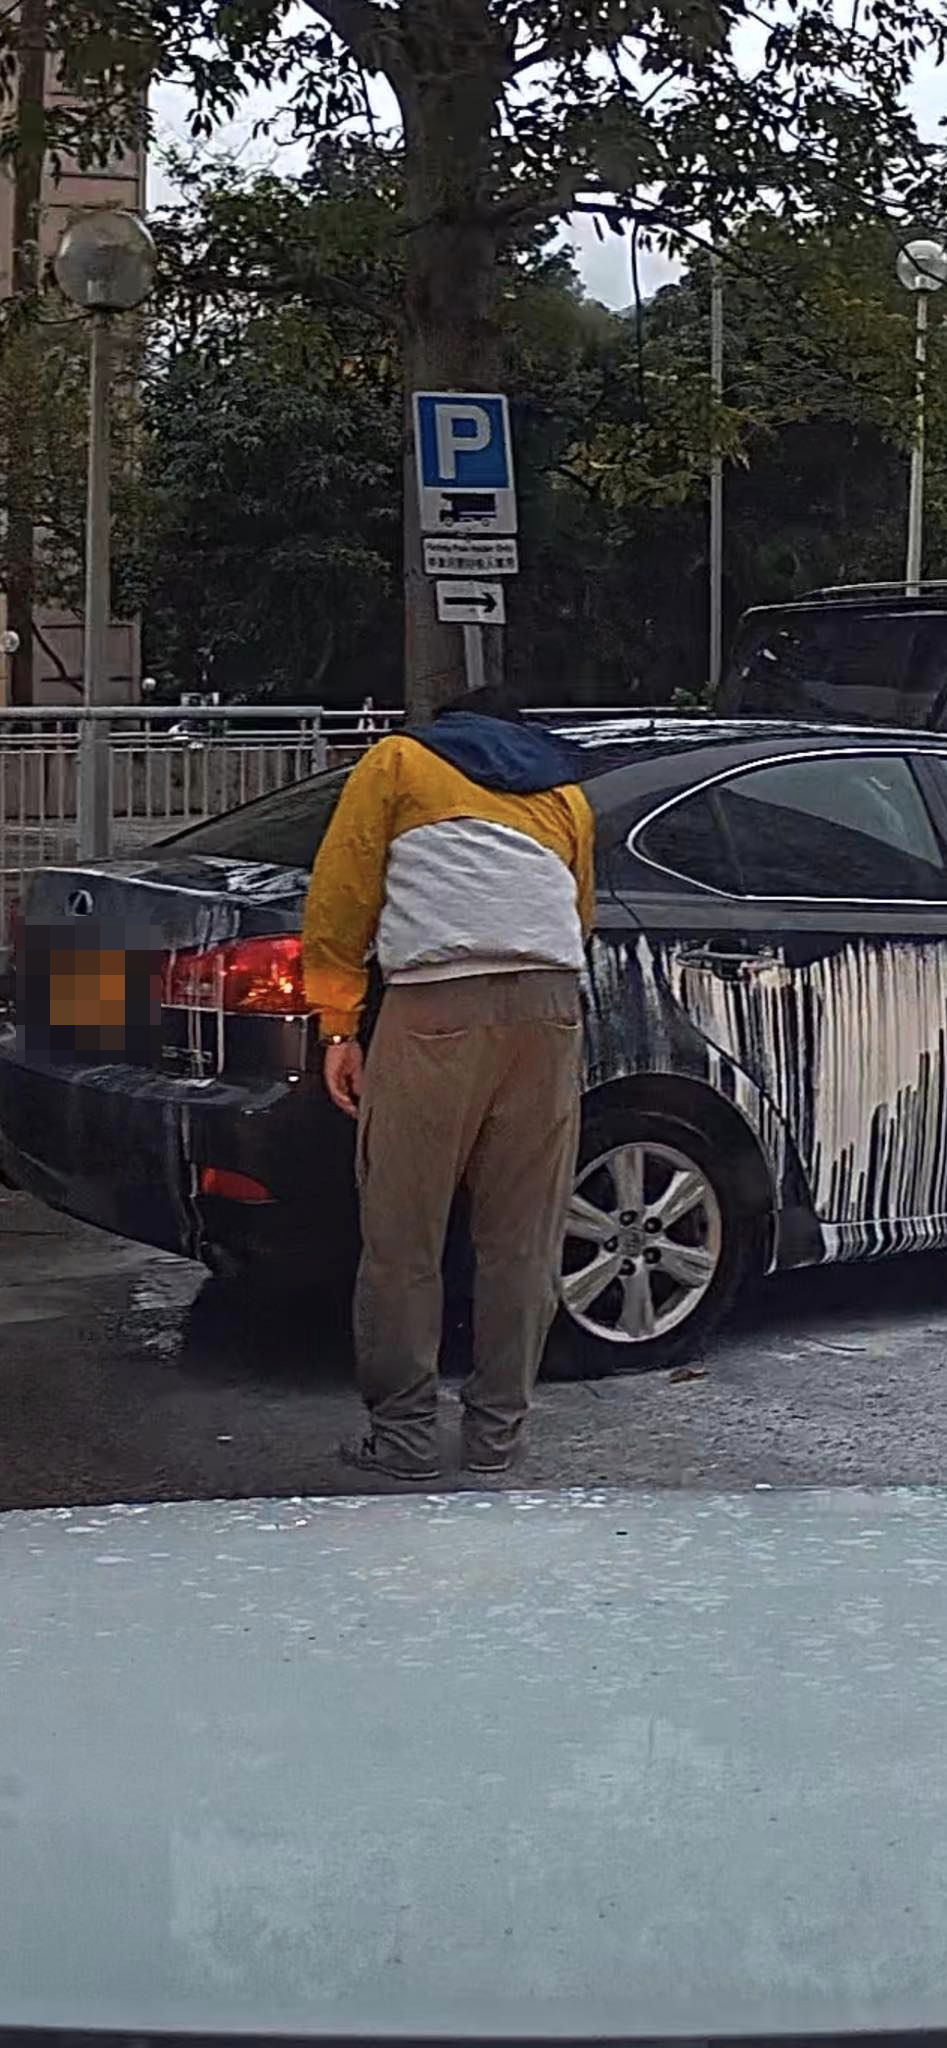 疑似车主手里拿著物品走到私家车前，似低头清洗车身。